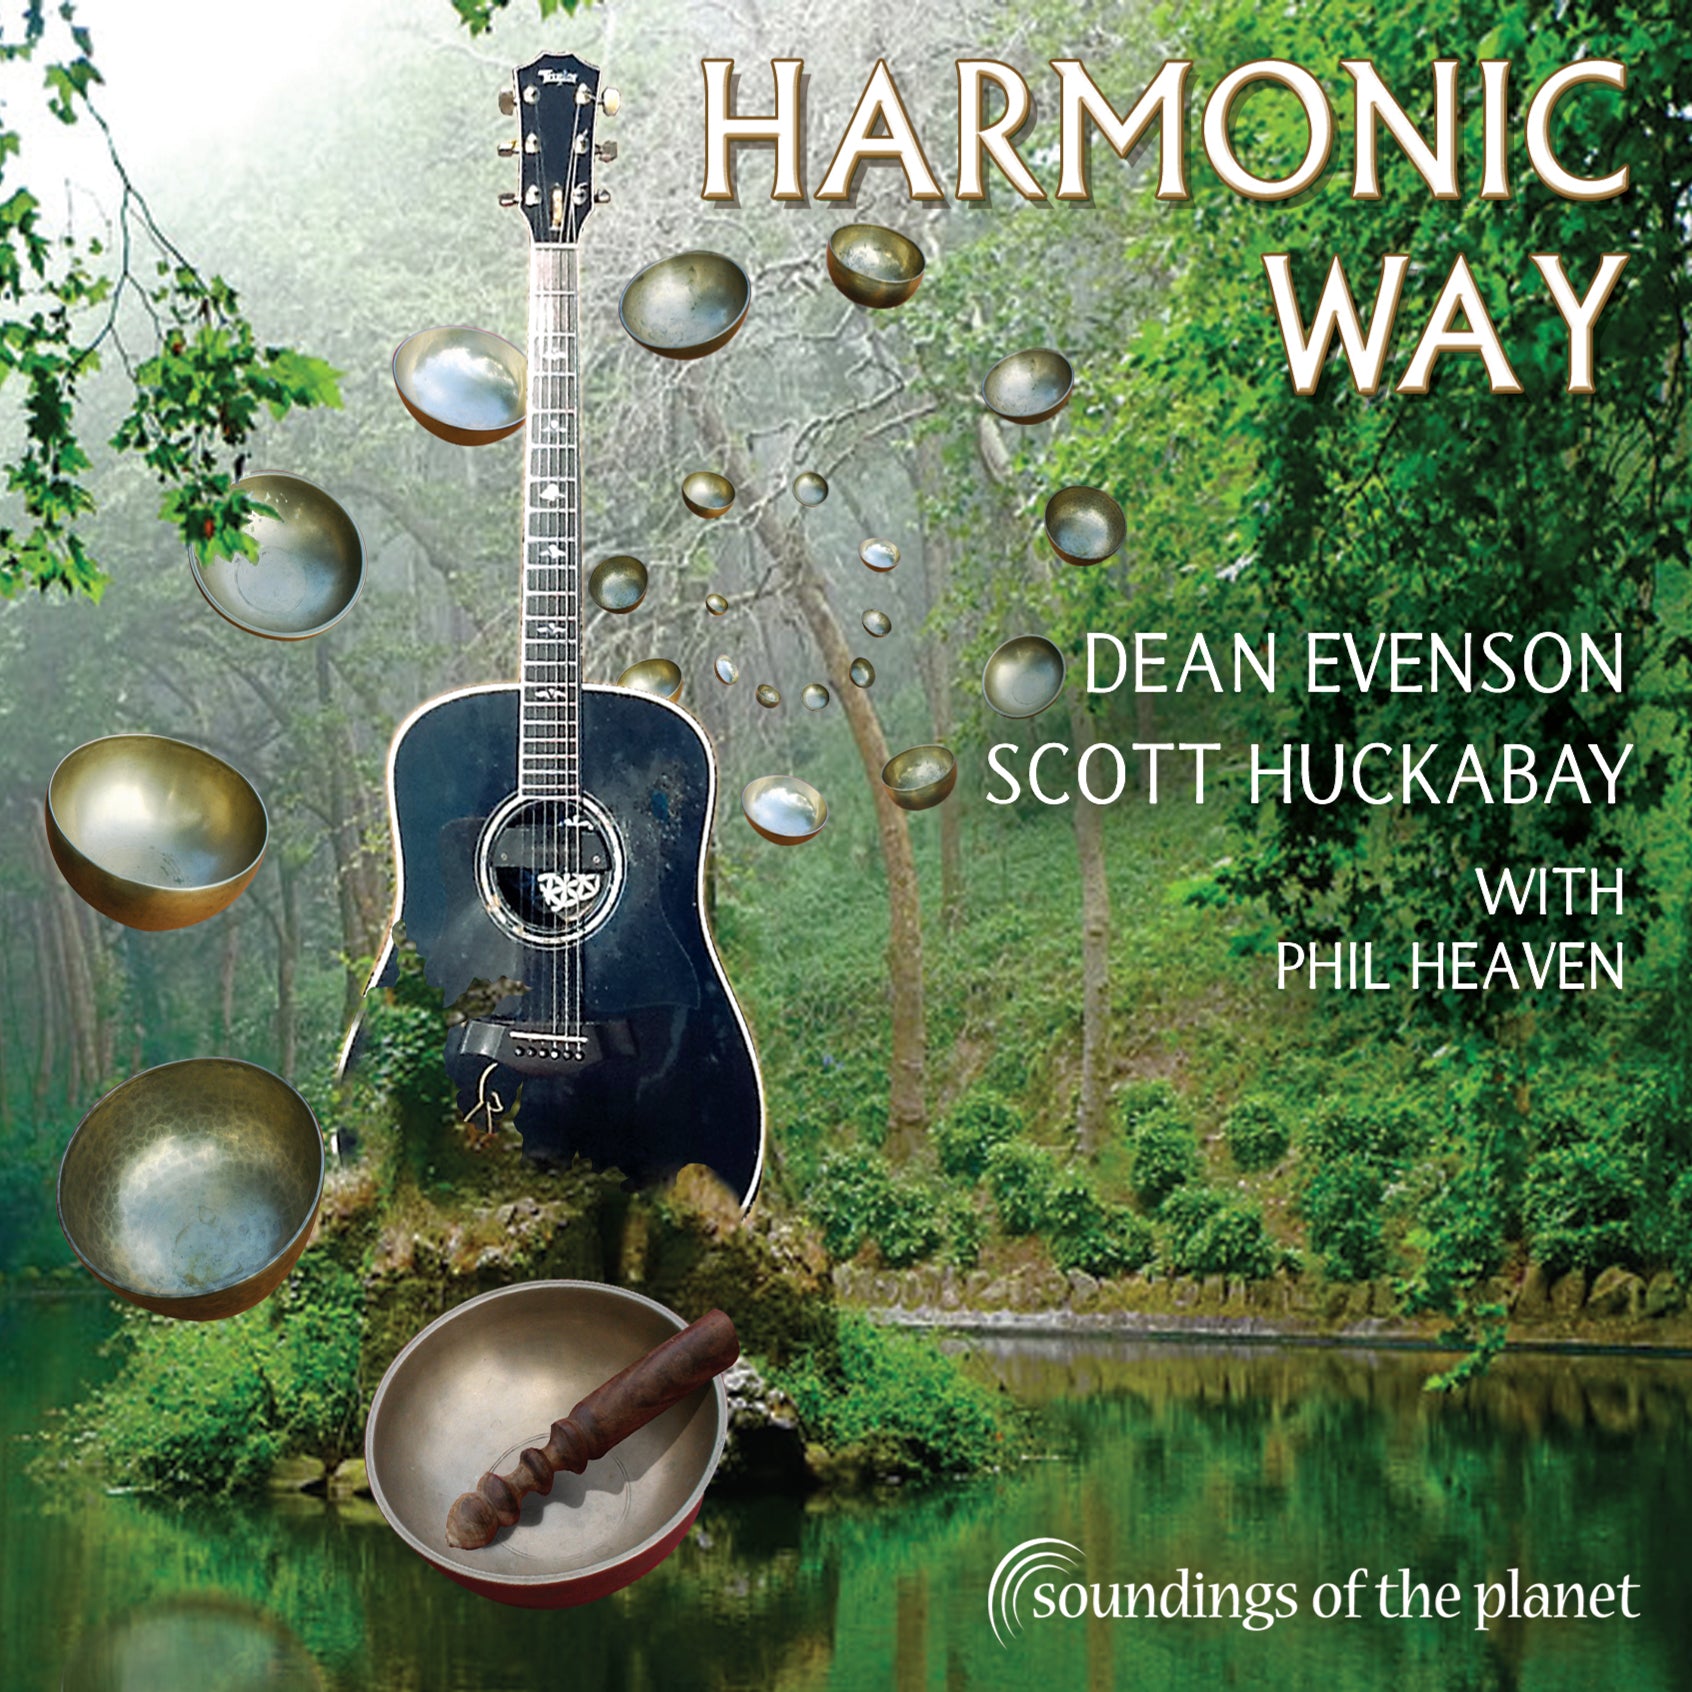 Harmonic Way by Dean Evenson and Scott Huckabay